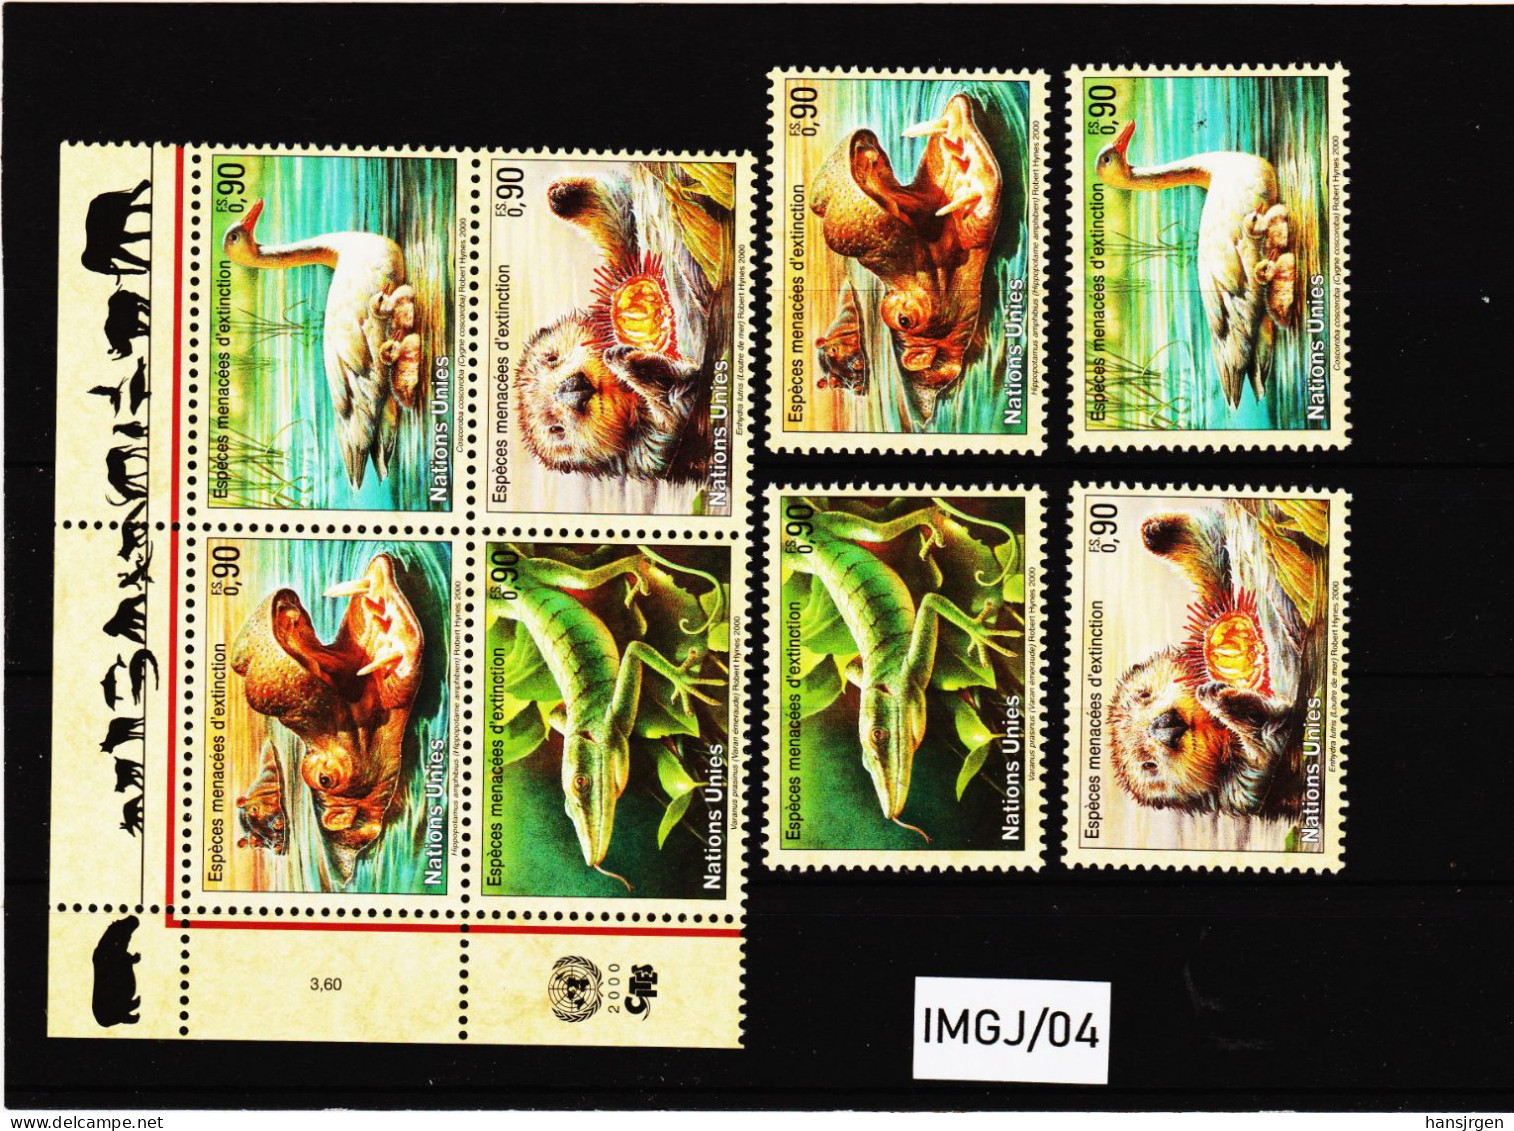 IMGJ/04 UNO GENF 2000 MICHL  385/88  Postfrisch ** SIEHE ABBILDUNG - Unused Stamps